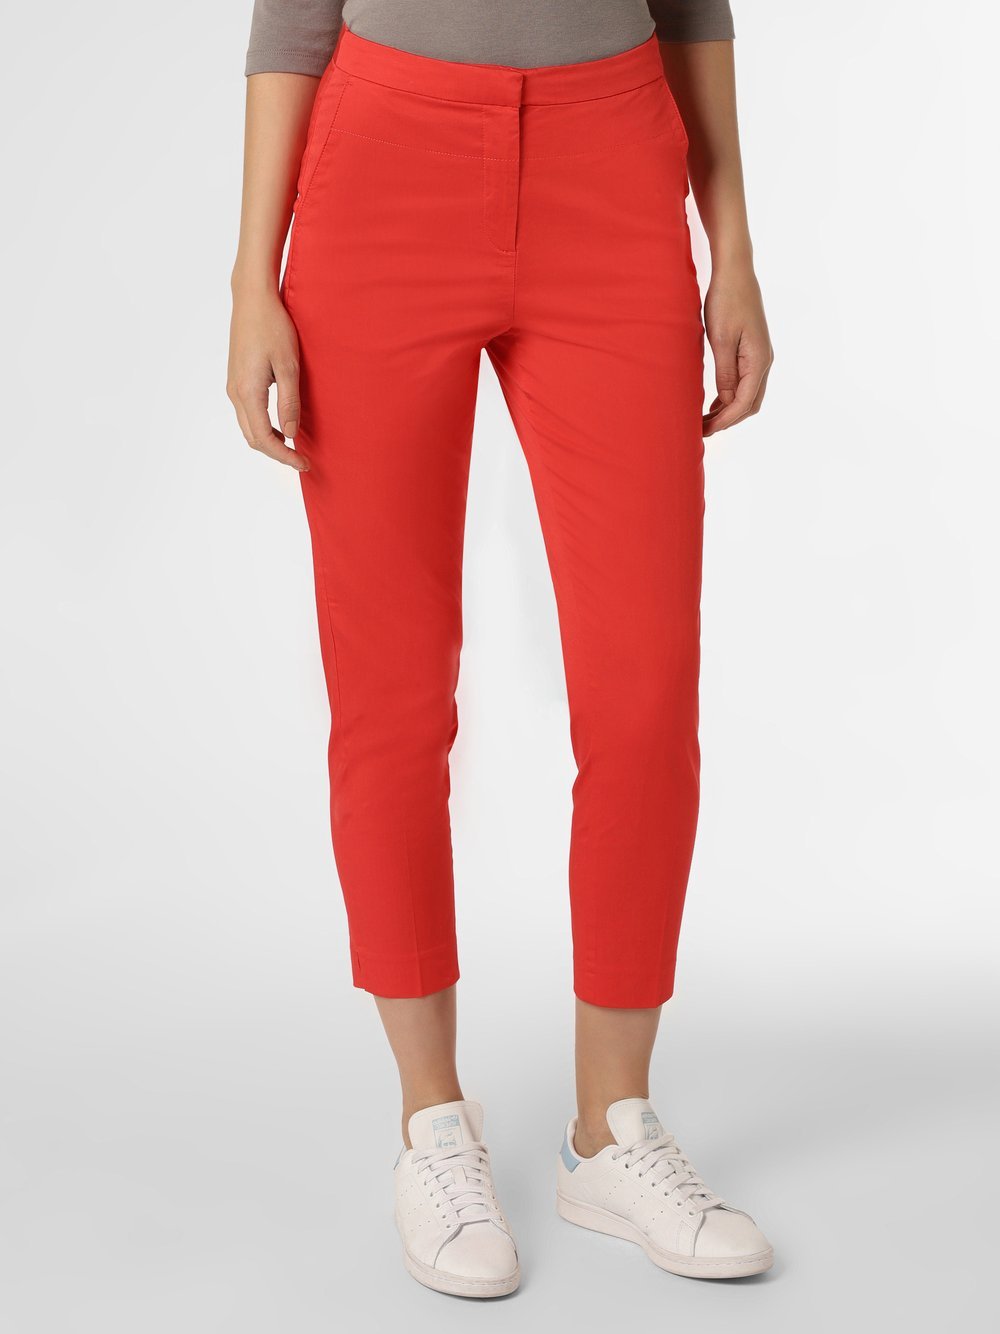 Esprit Collection - Spodnie damskie, czerwony Esprit Collection